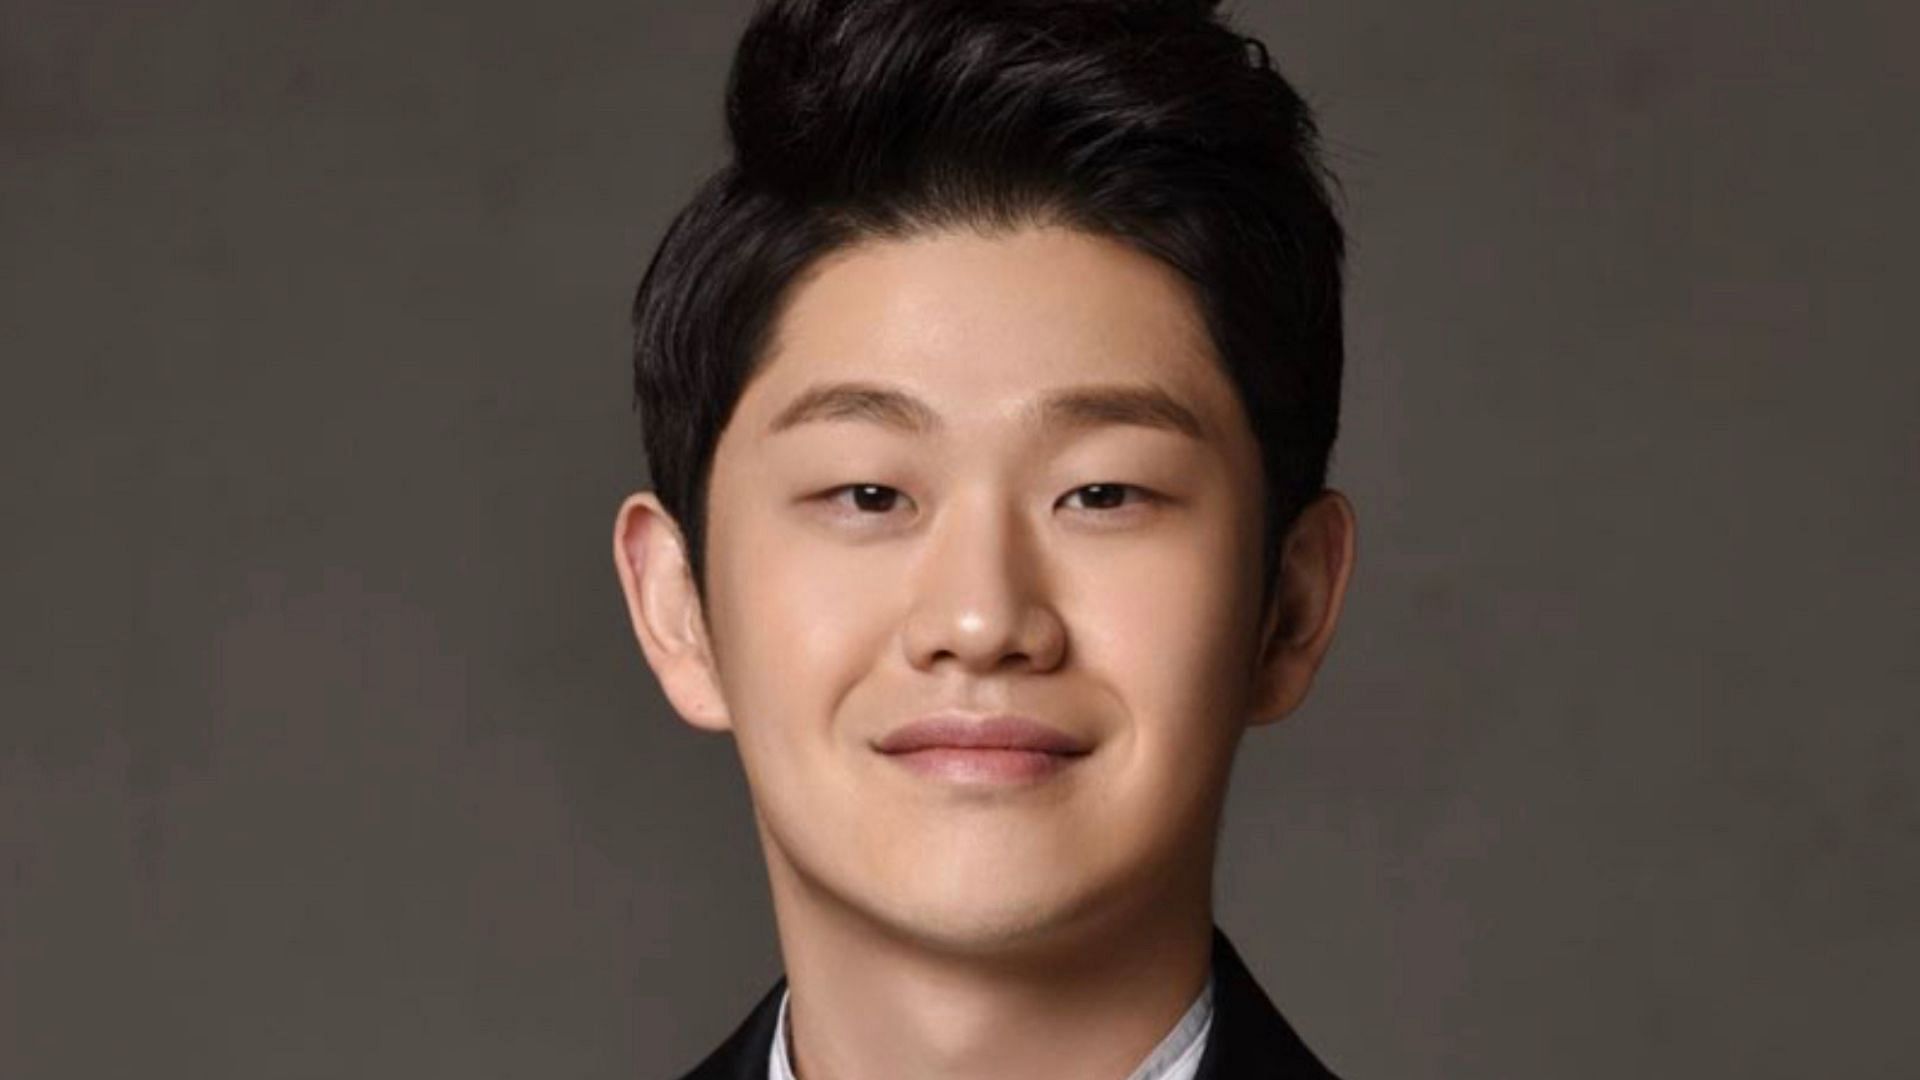 Korea's Got Talent artist Choi Sung Bong faking his cancer